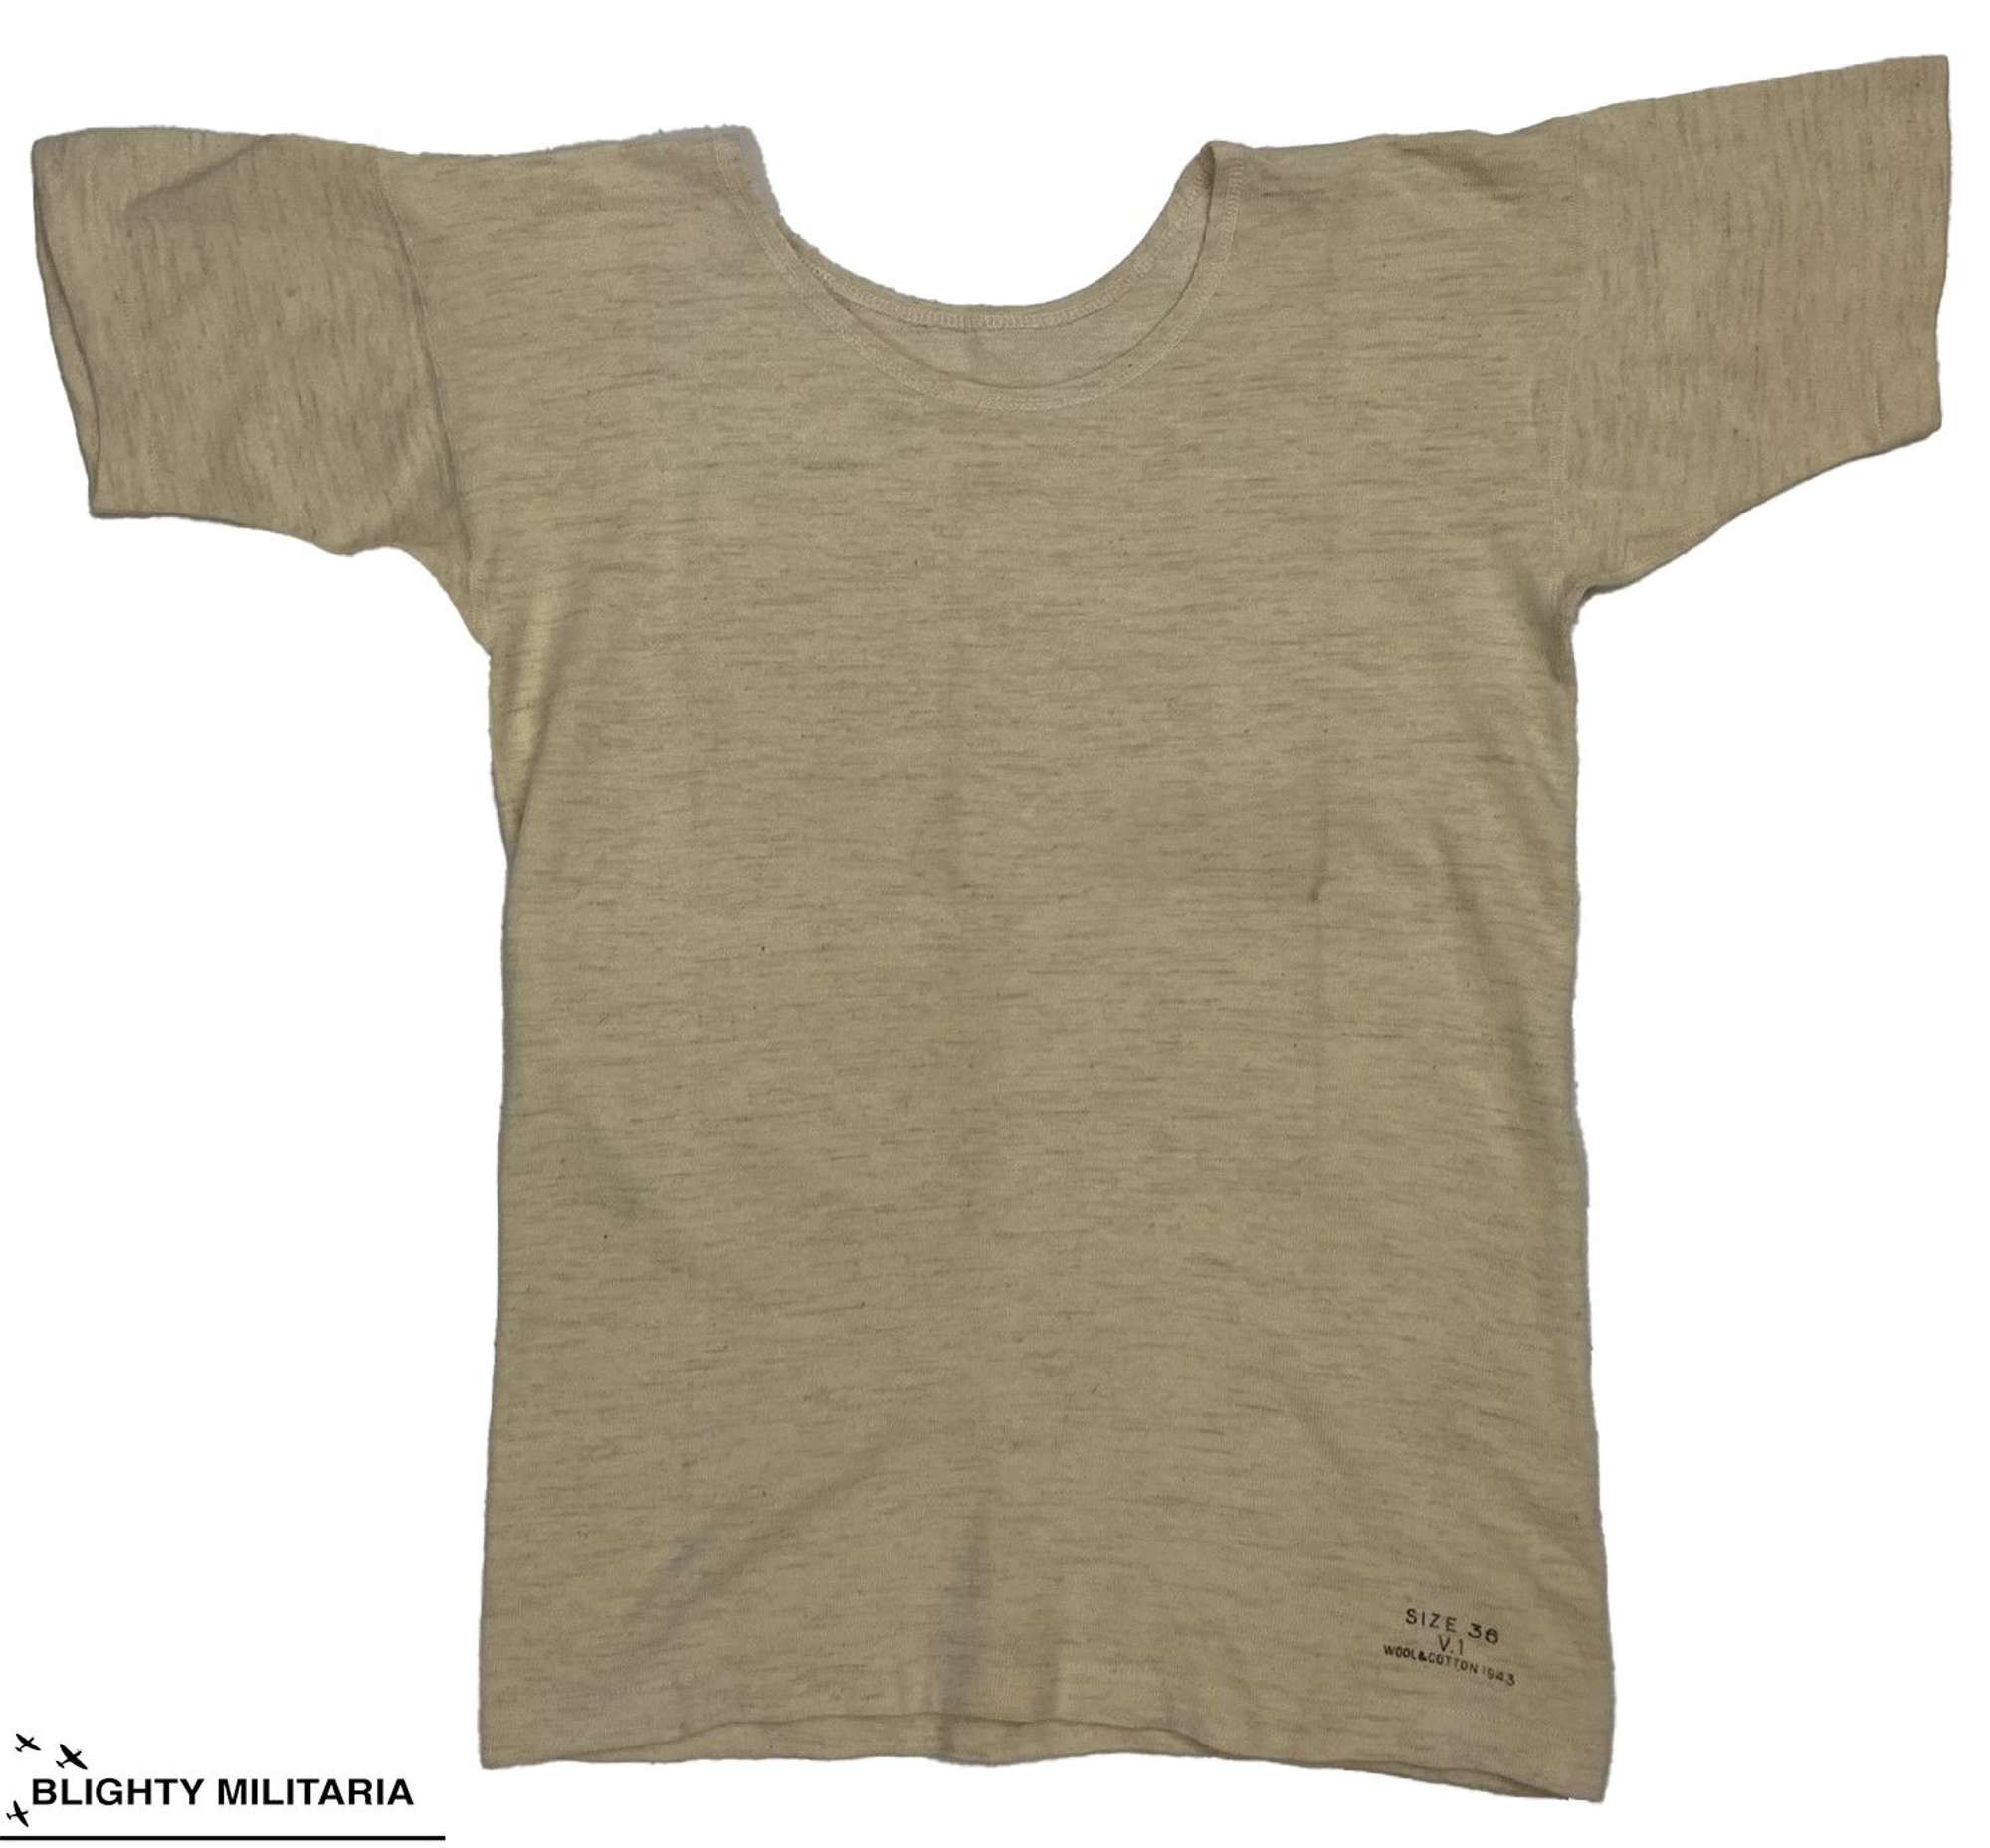 Original 1943 Dated British Military Woollen Undershirt - Size 36